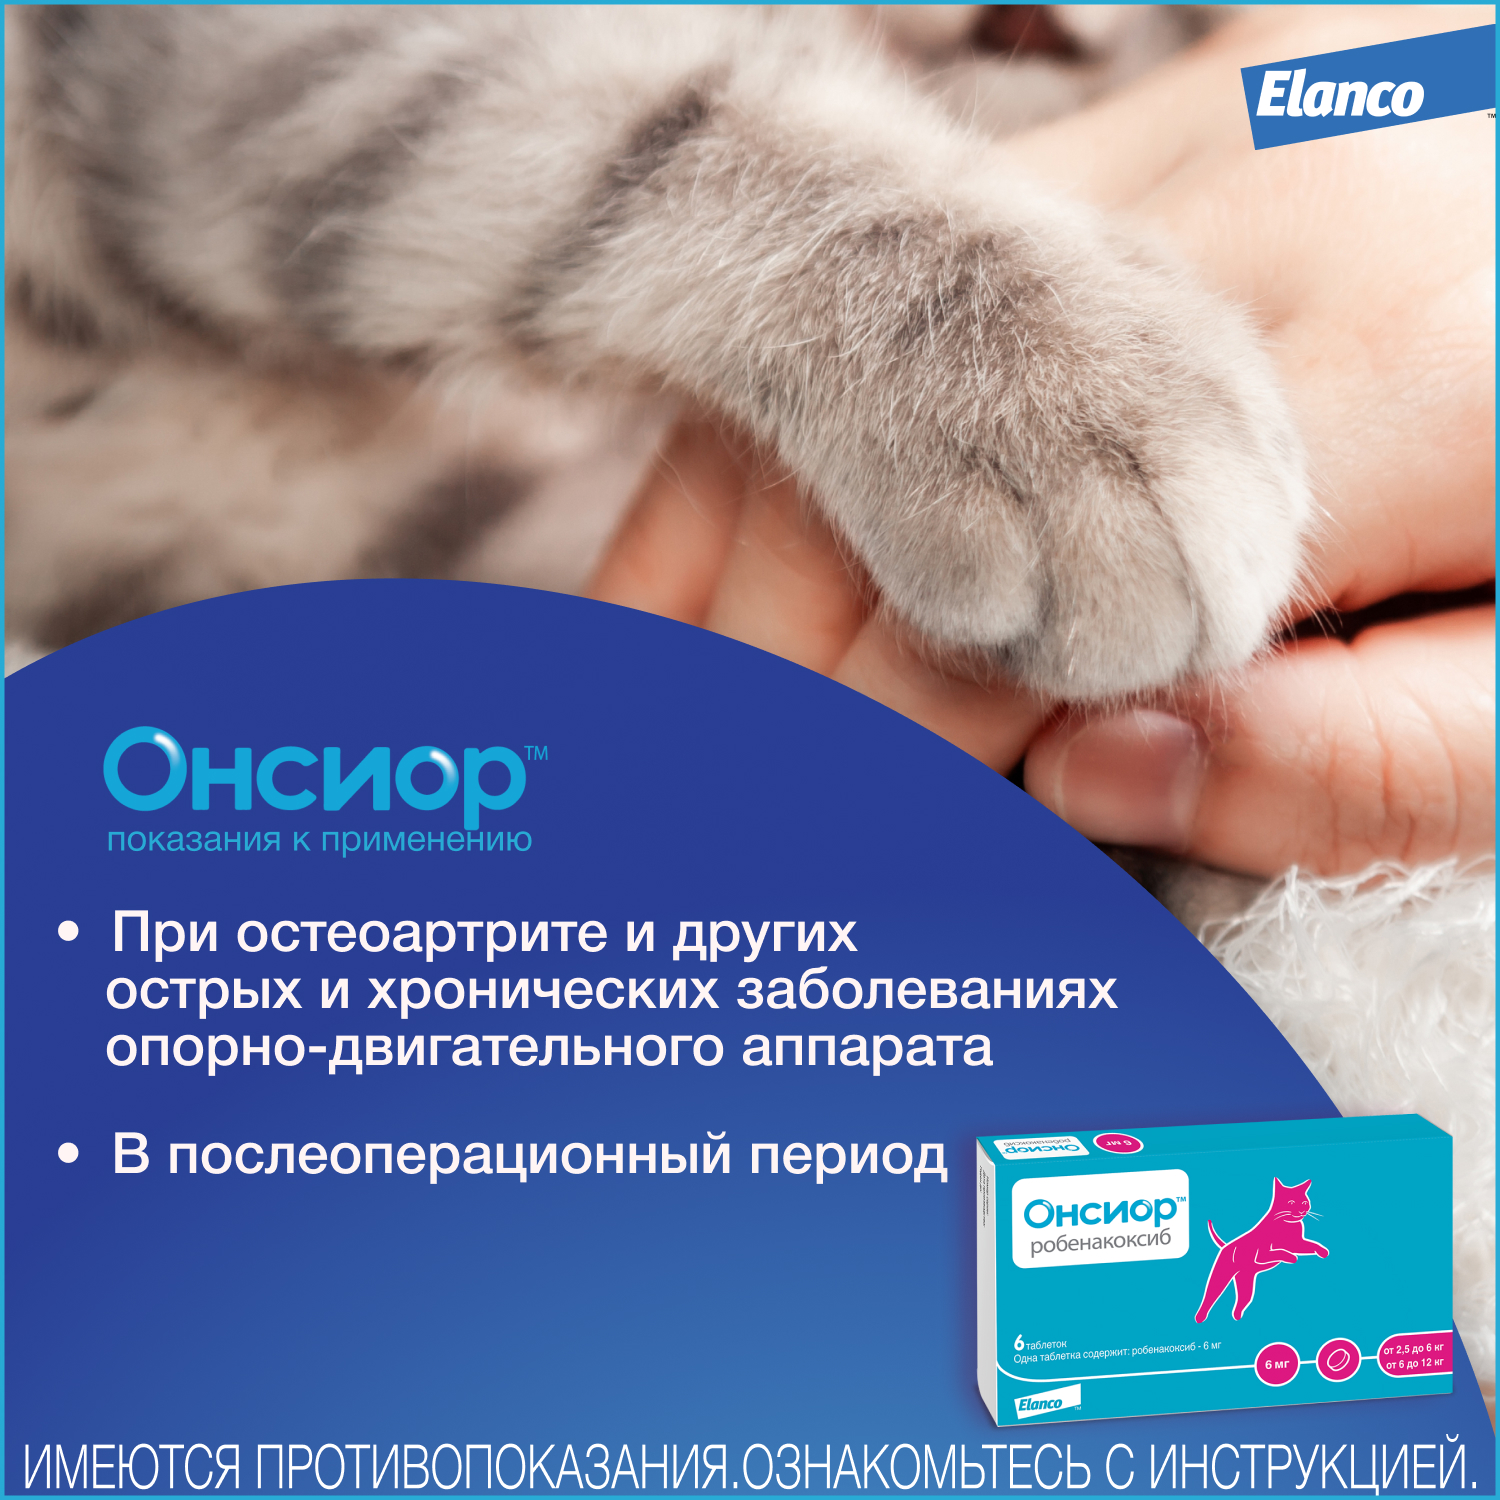 Препарат для кошек Elanco Онсиор противовоспалительный 6мг*6таблеток - фото 6